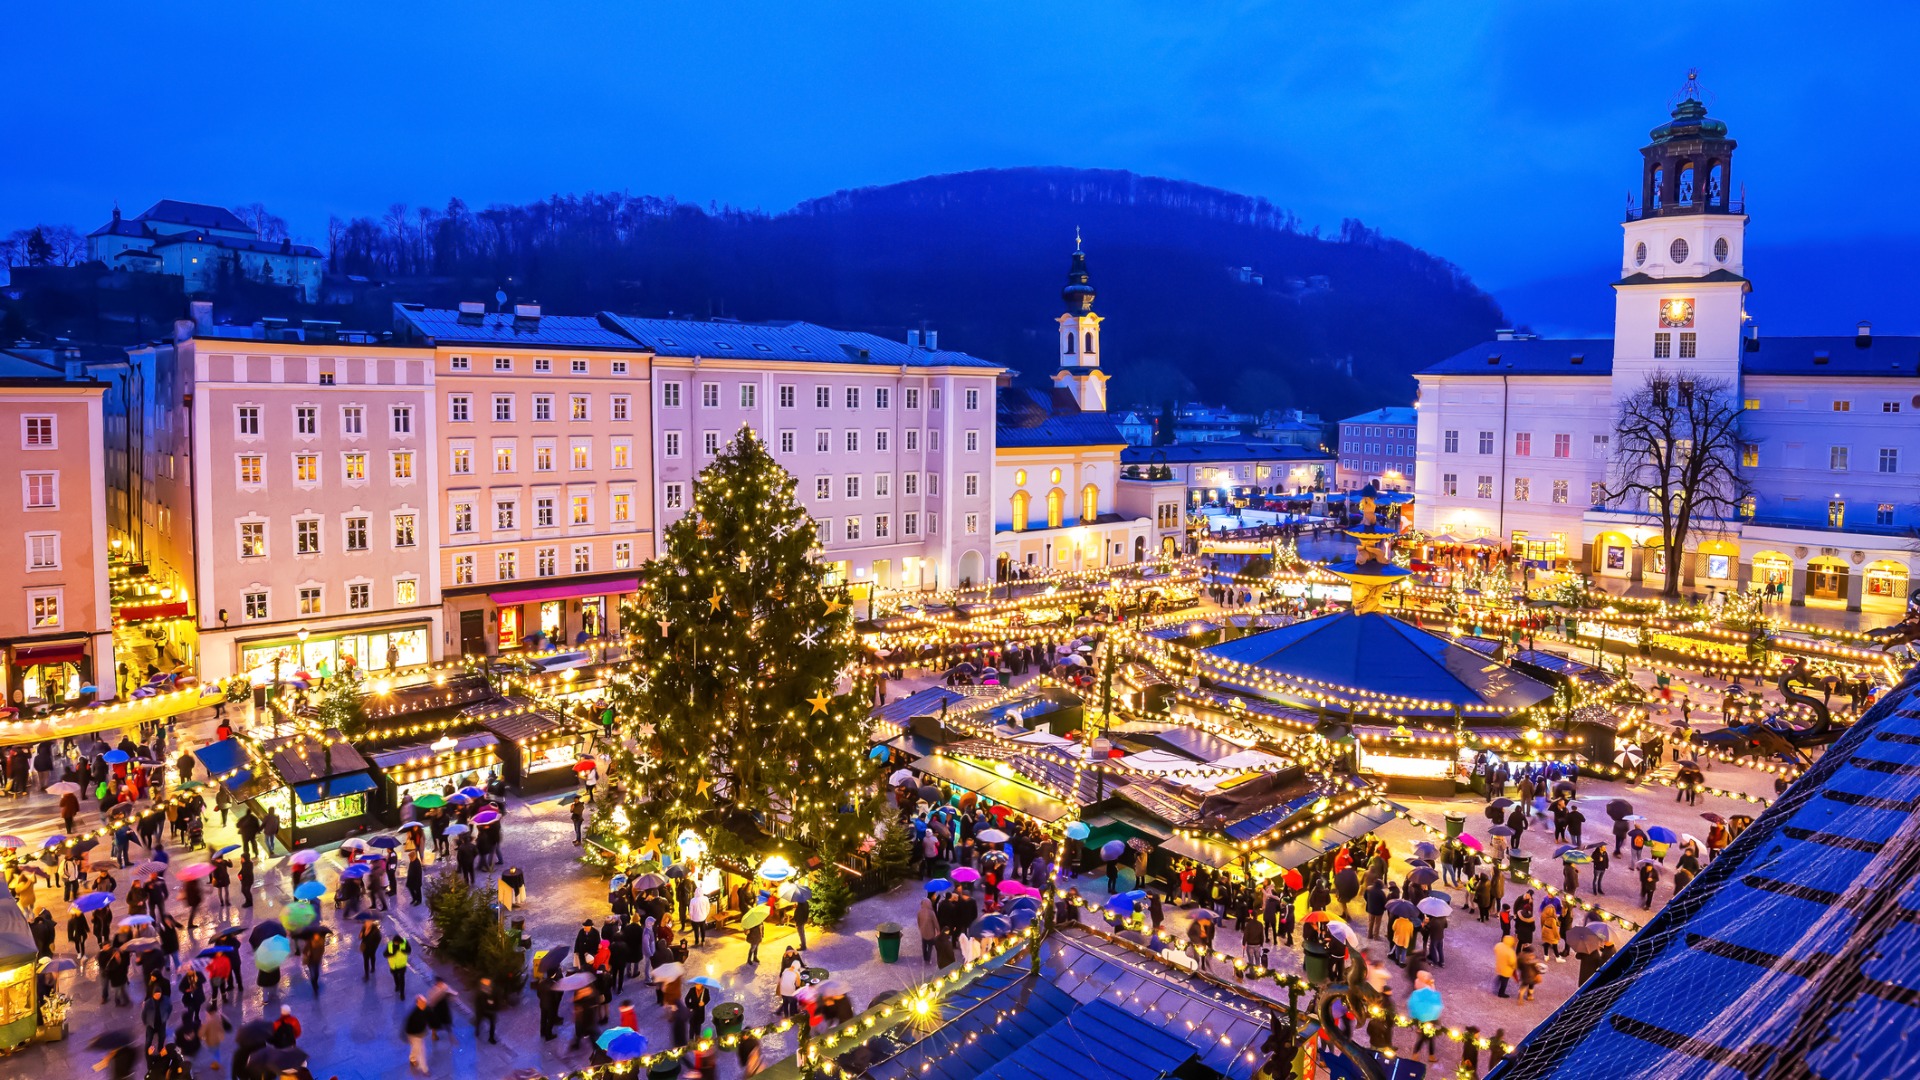 Această imagine prezintă o vedere panoramică a pieței de Crăciun din Salzburg la amurg. Înconjurată de clădiri frumoase, piața este plină de tarabe și lumini festive. În mijlocul pieței se află un pom de Crăciun și mulți oameni. 